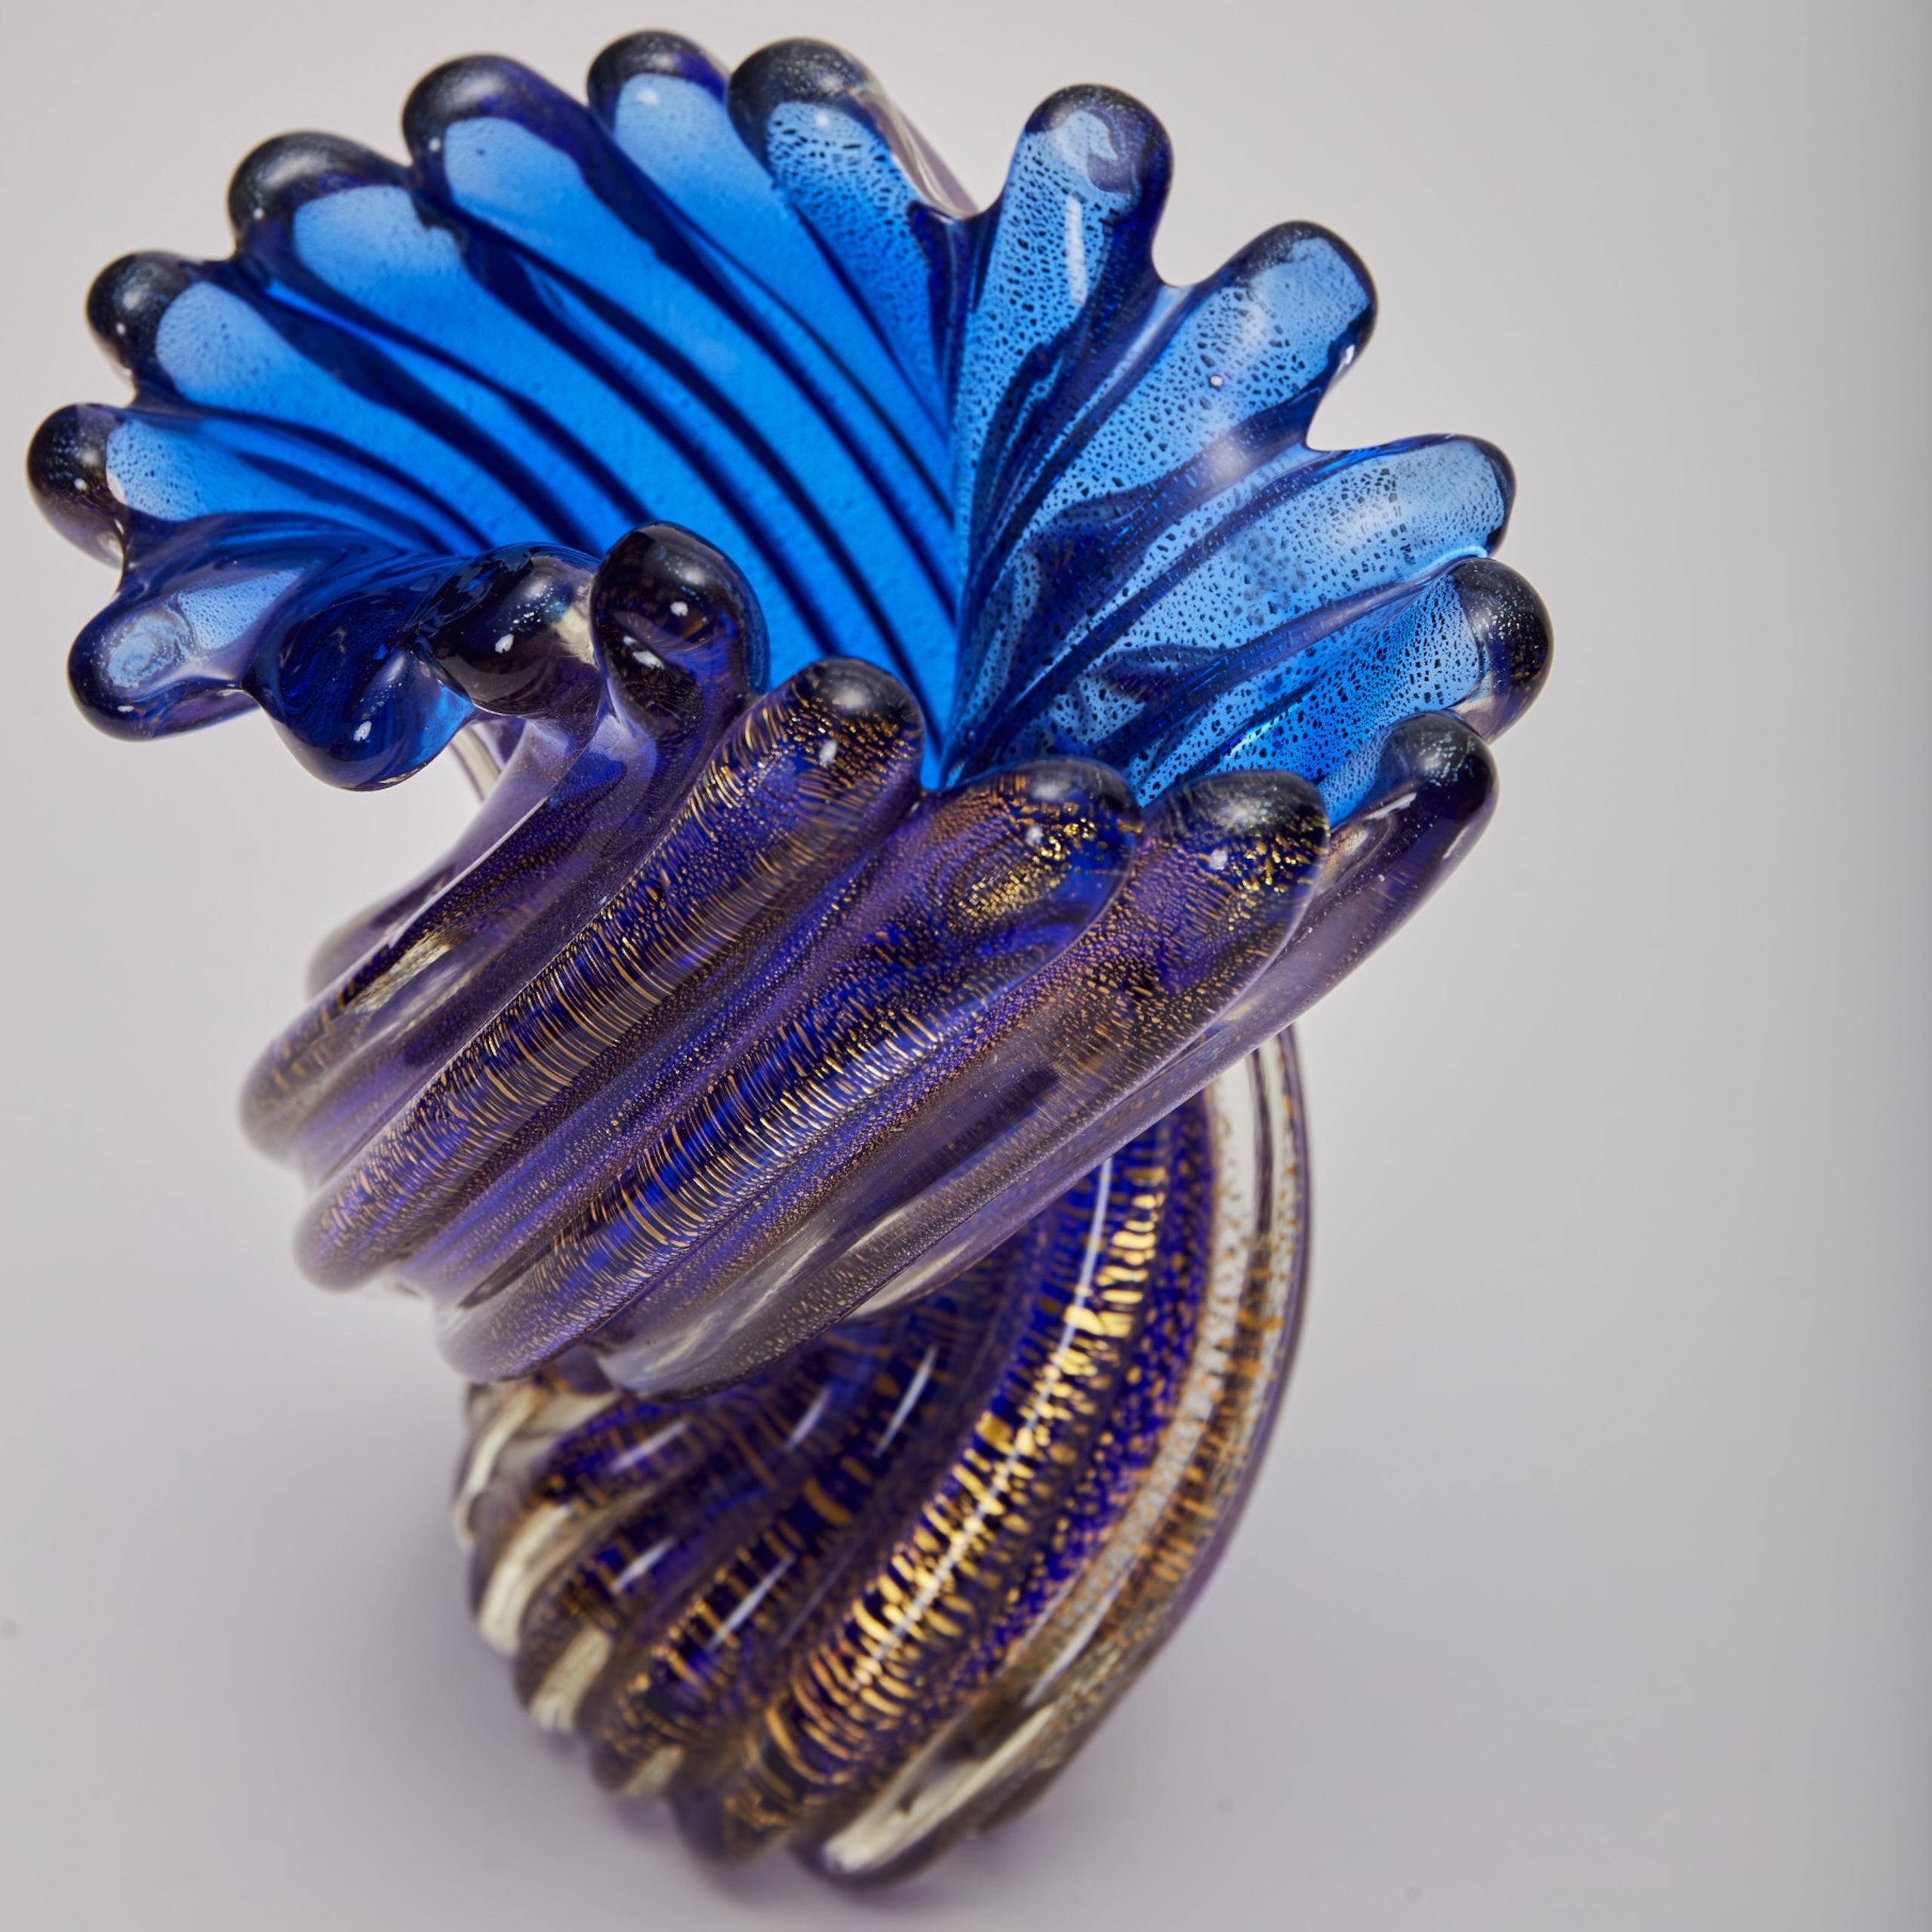 Ritorto signifie jumelé en italien. Ce vase en verre soufflé à la main est composé de colonnes de verre torsadé translucide pour former un vase en forme de spirale de couleur bleu persan. Le récipient nervuré est rehaussé d'une pluie de mouchetures